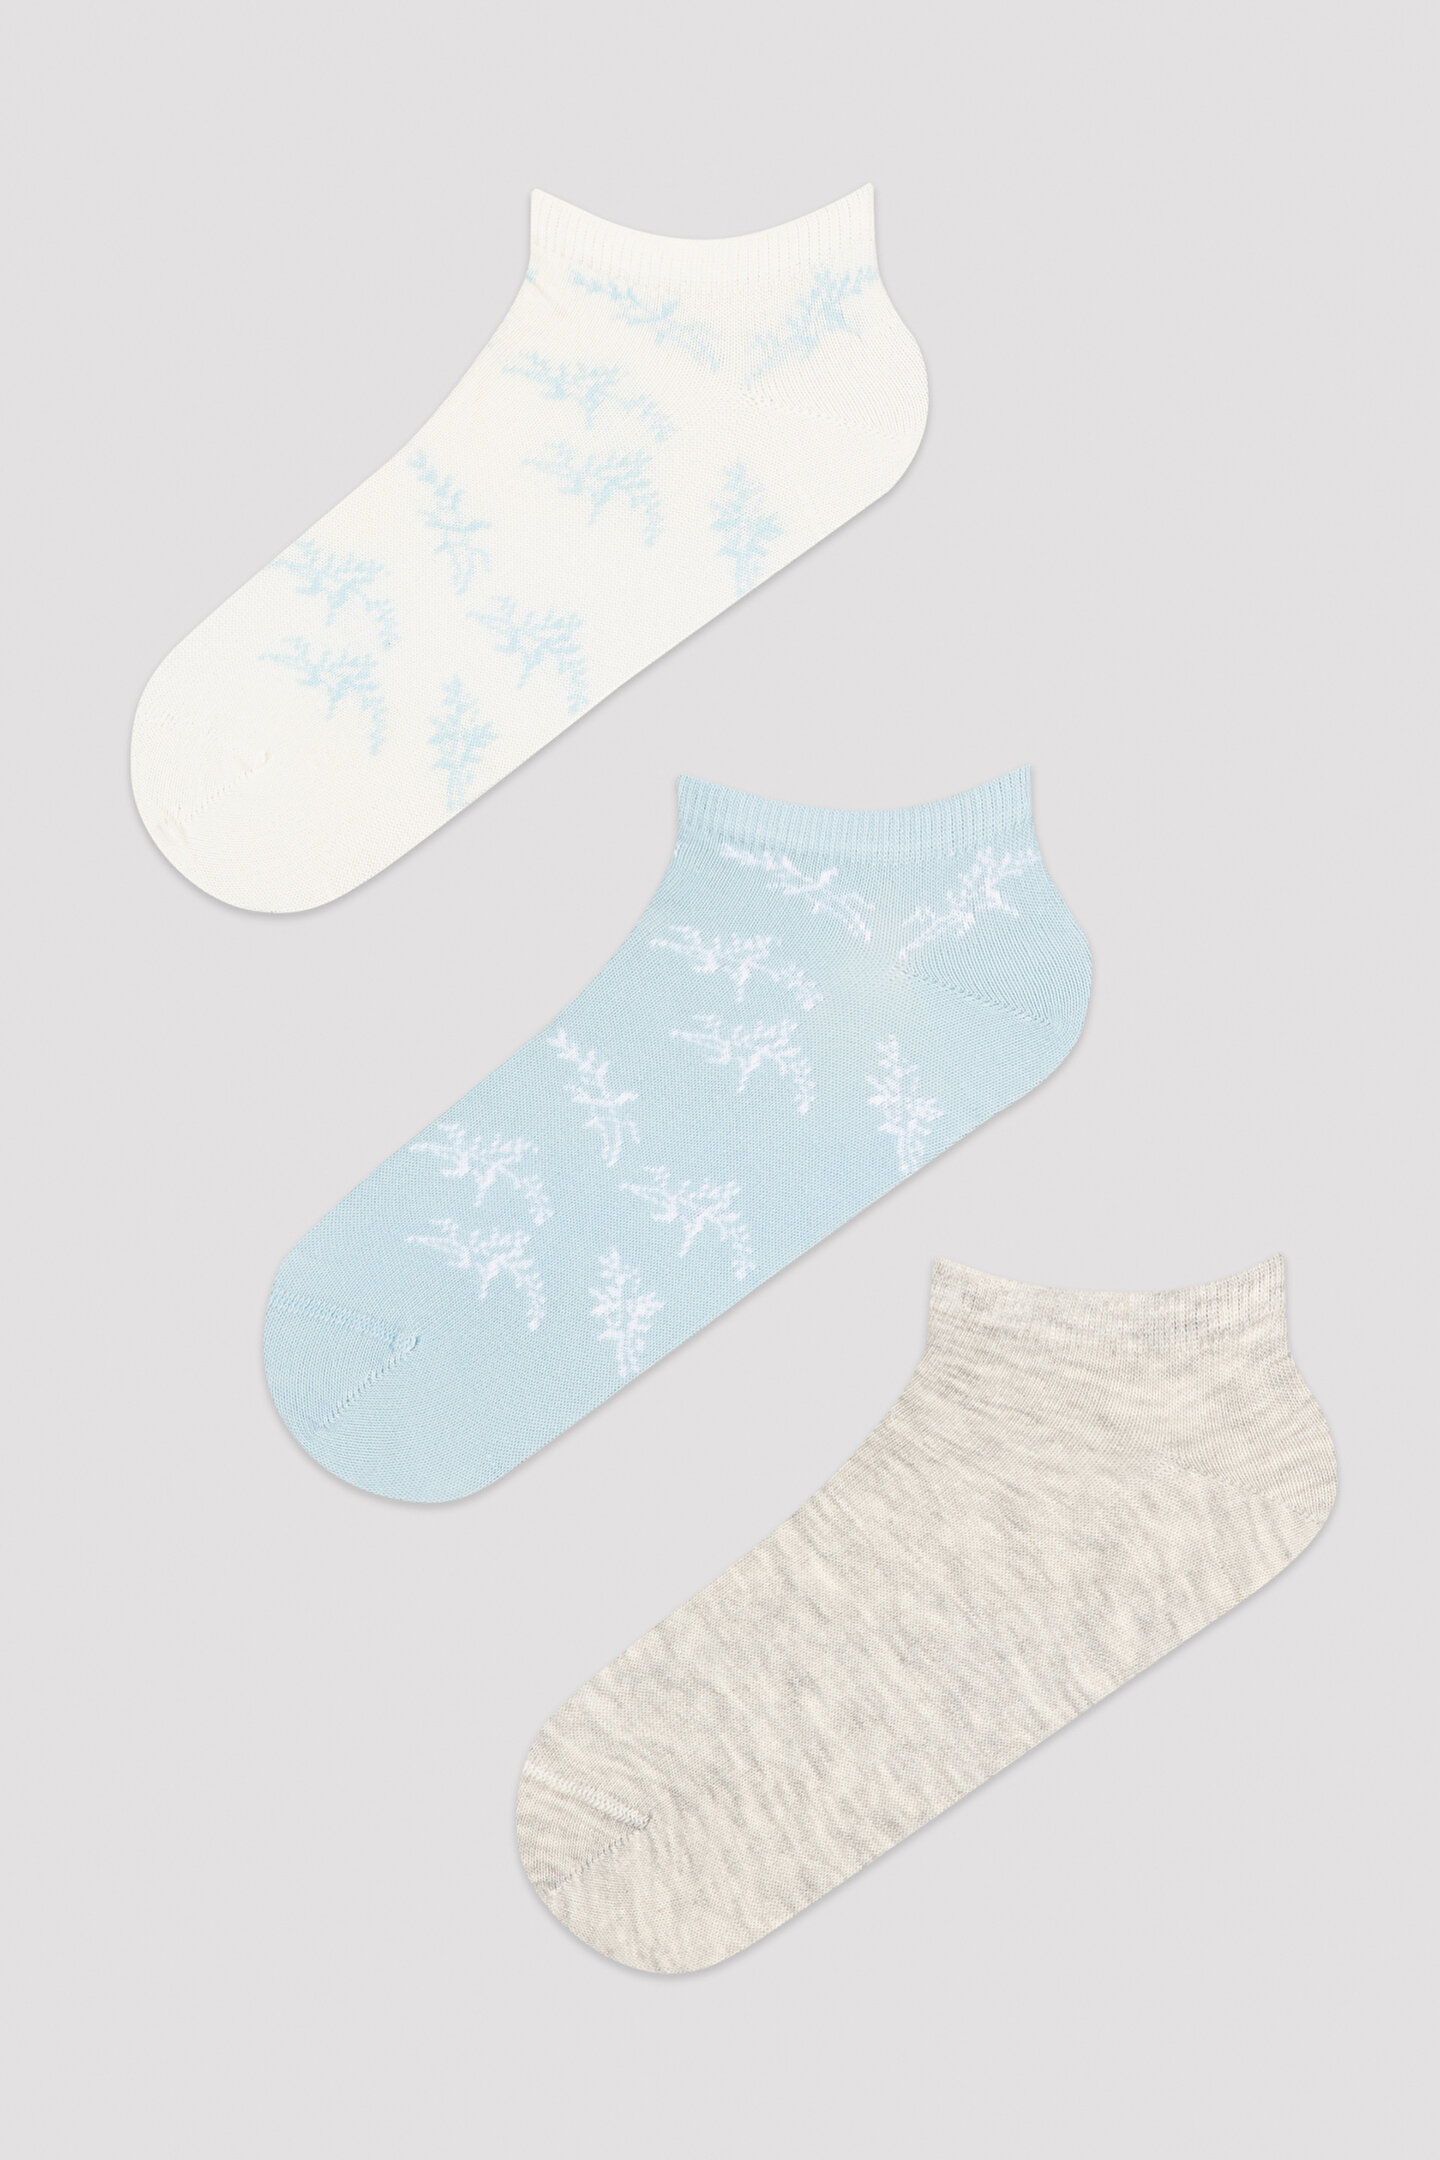 Uniq 3in1 Liner Socks